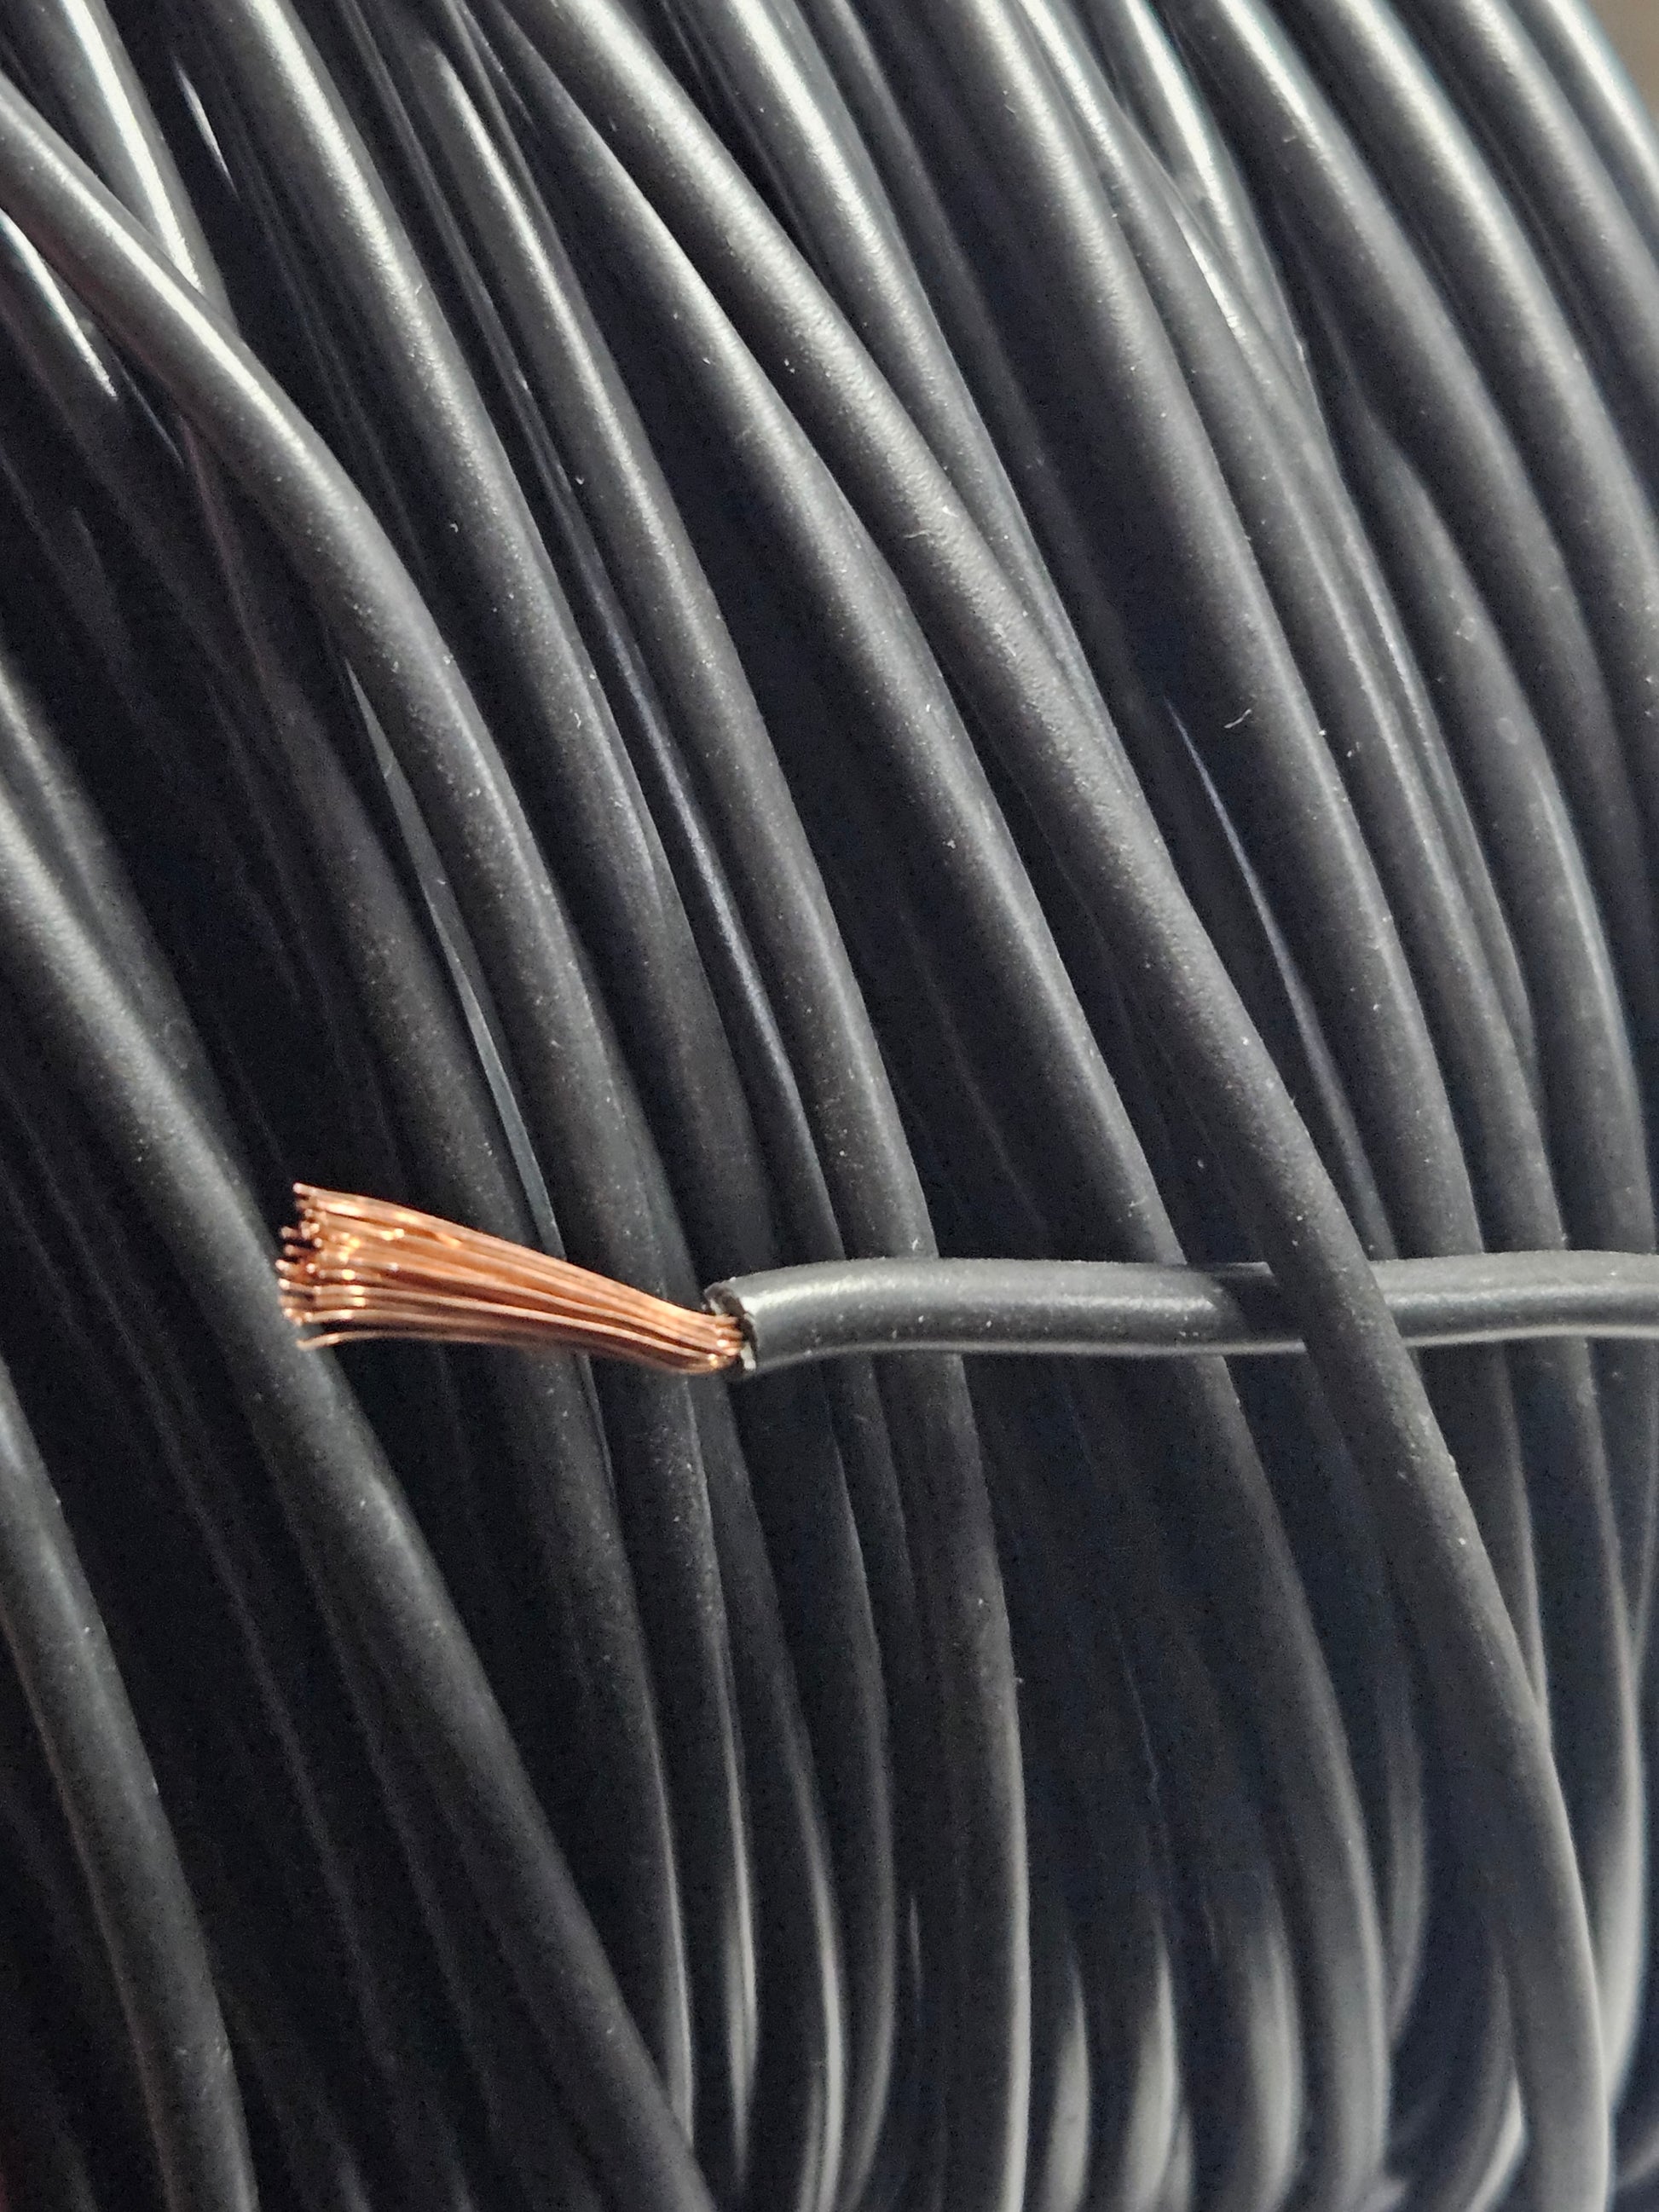 Cable eléctrico 2 hilos rojo/negro varios tramos